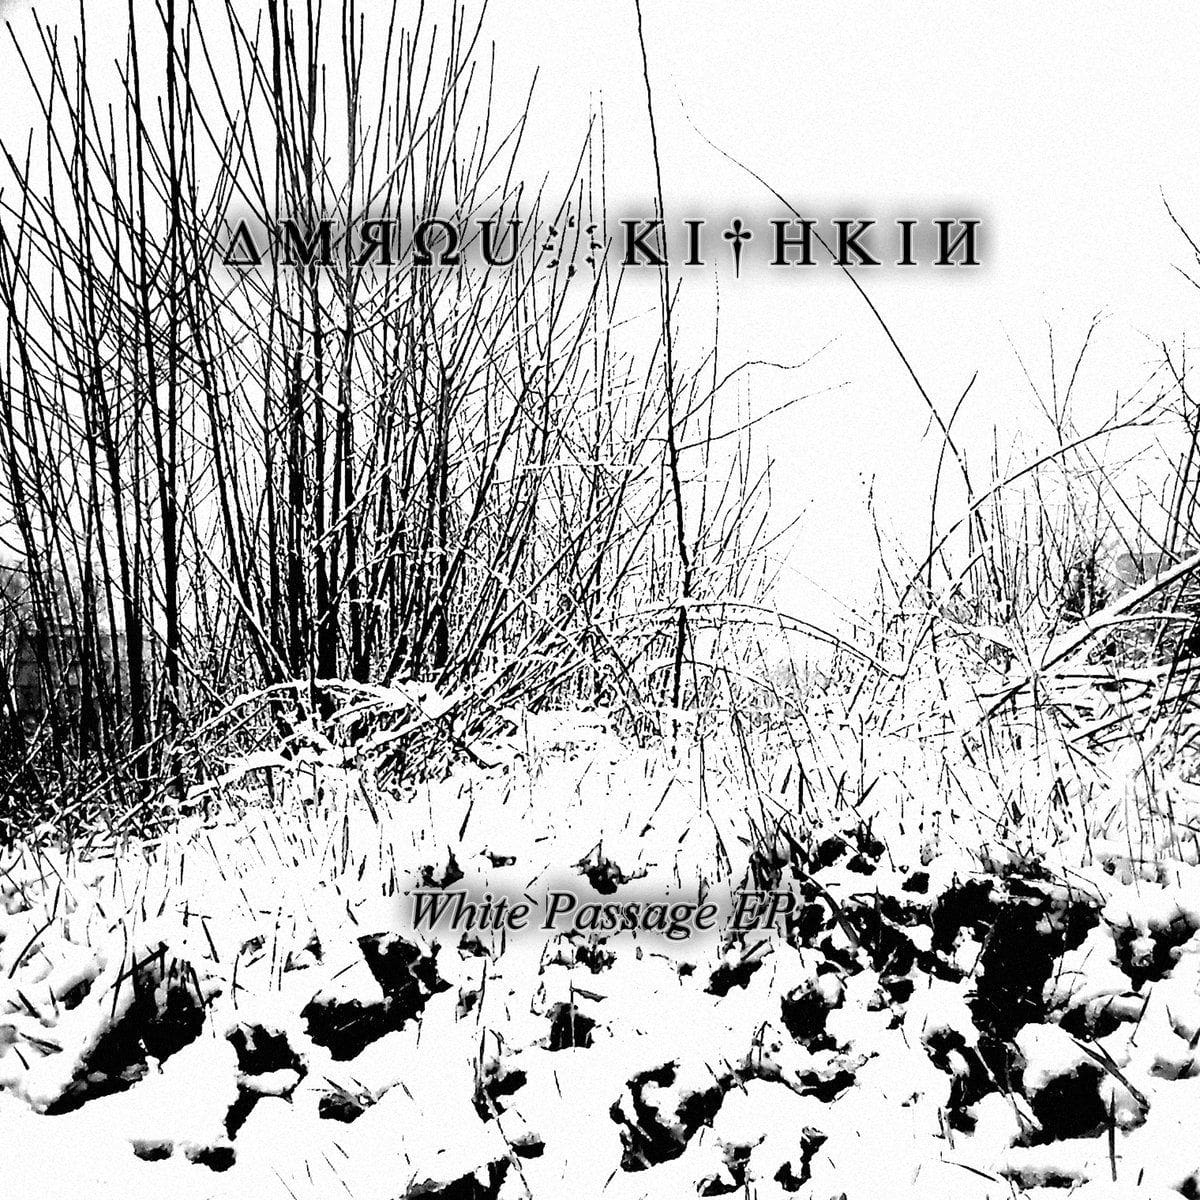 Amrou Kithkin – White Passage